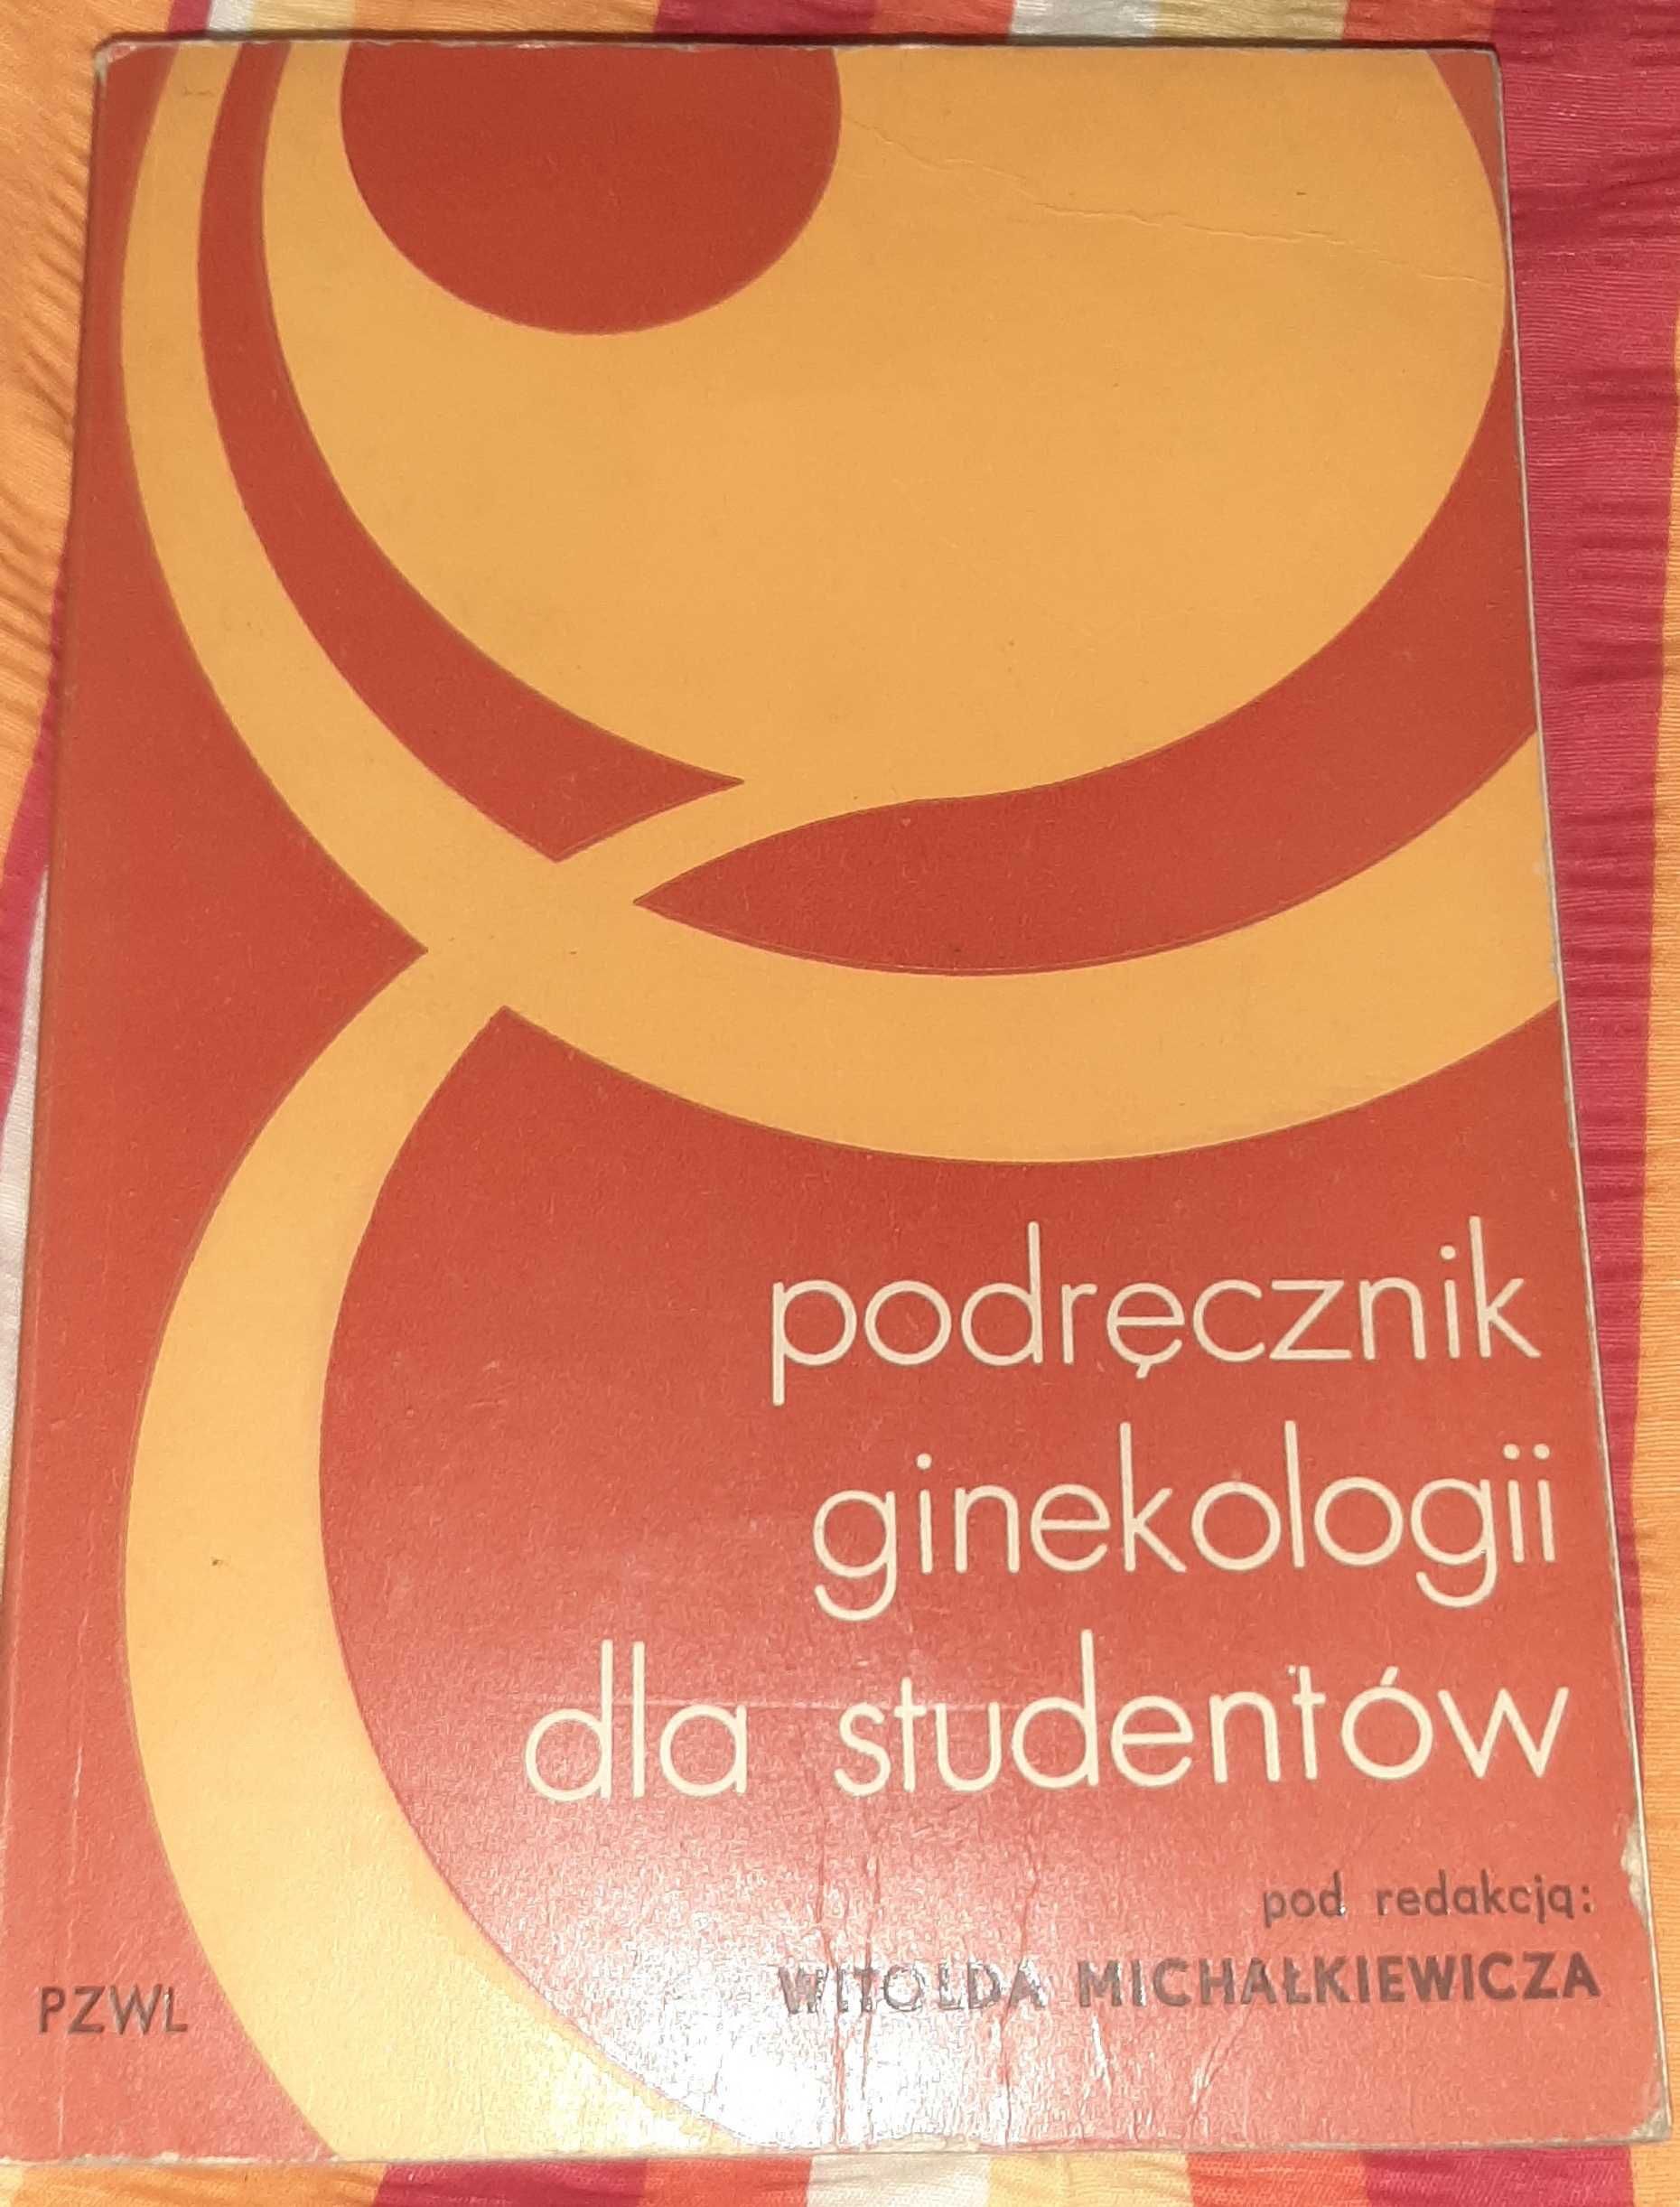 Podręcznik ginekologii dla studentów W. Michałkiewicz